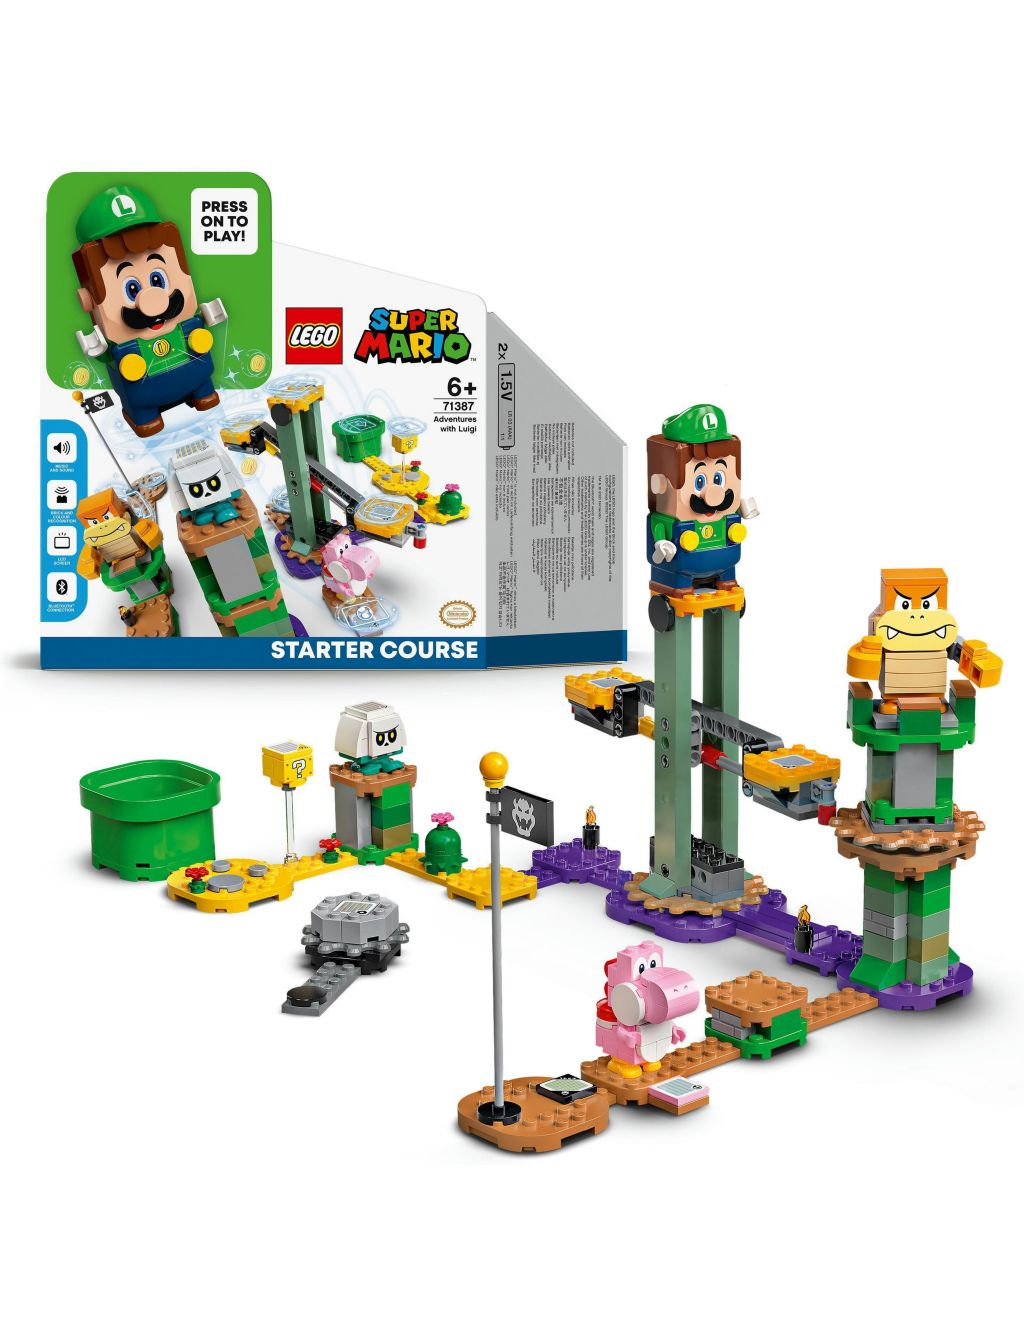 LEGO® Super Mario™ Adventures with Luigi Starter Course 71387 (6+ Yrs)